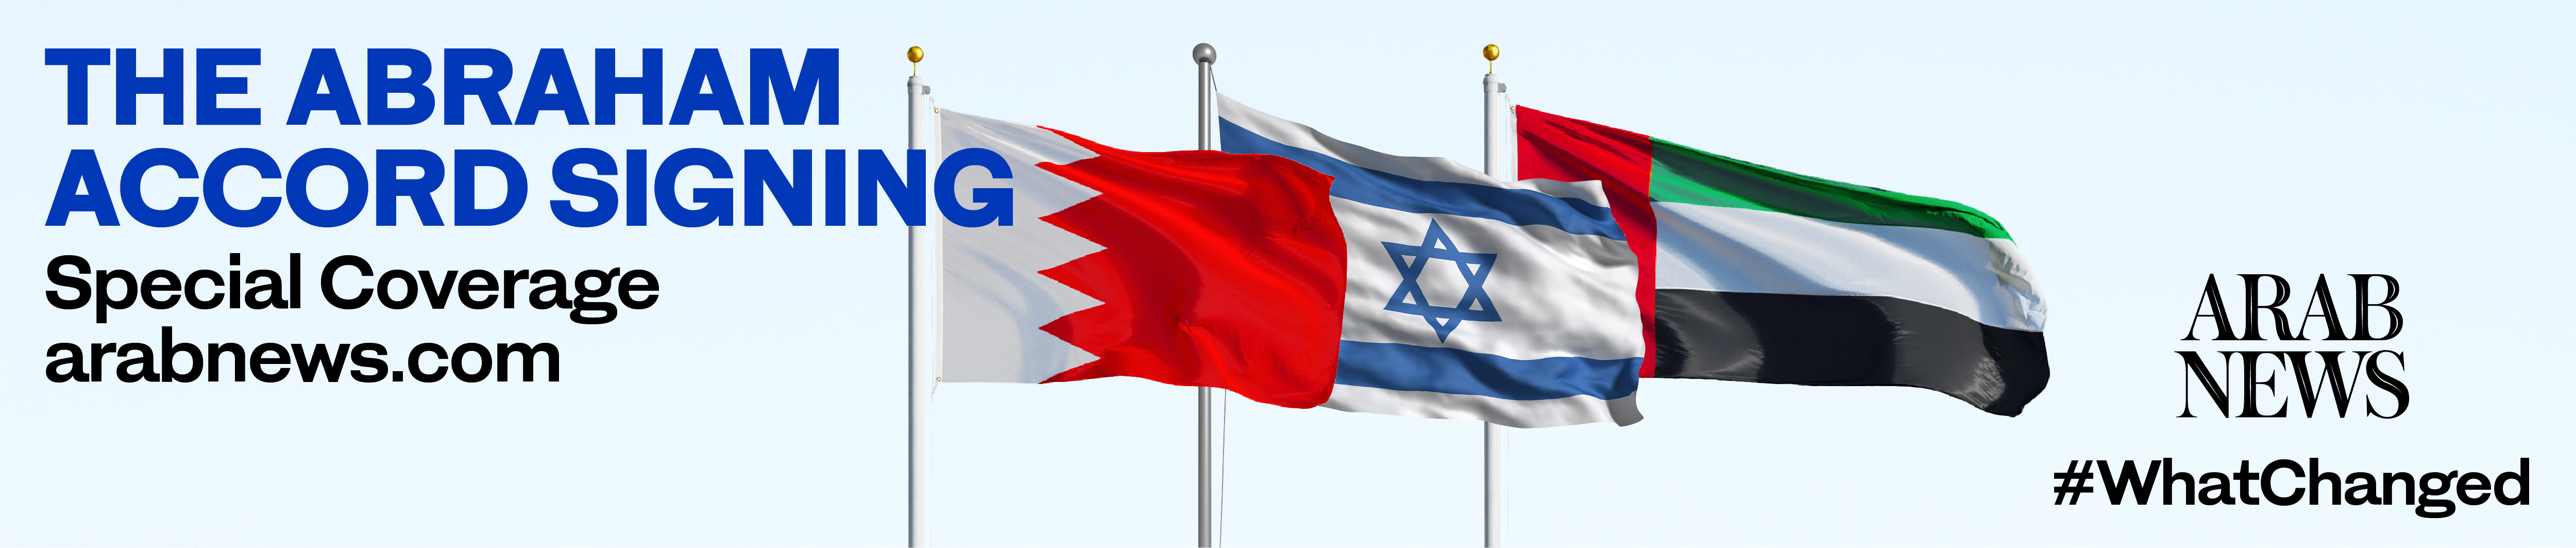 UAE-Israel relations